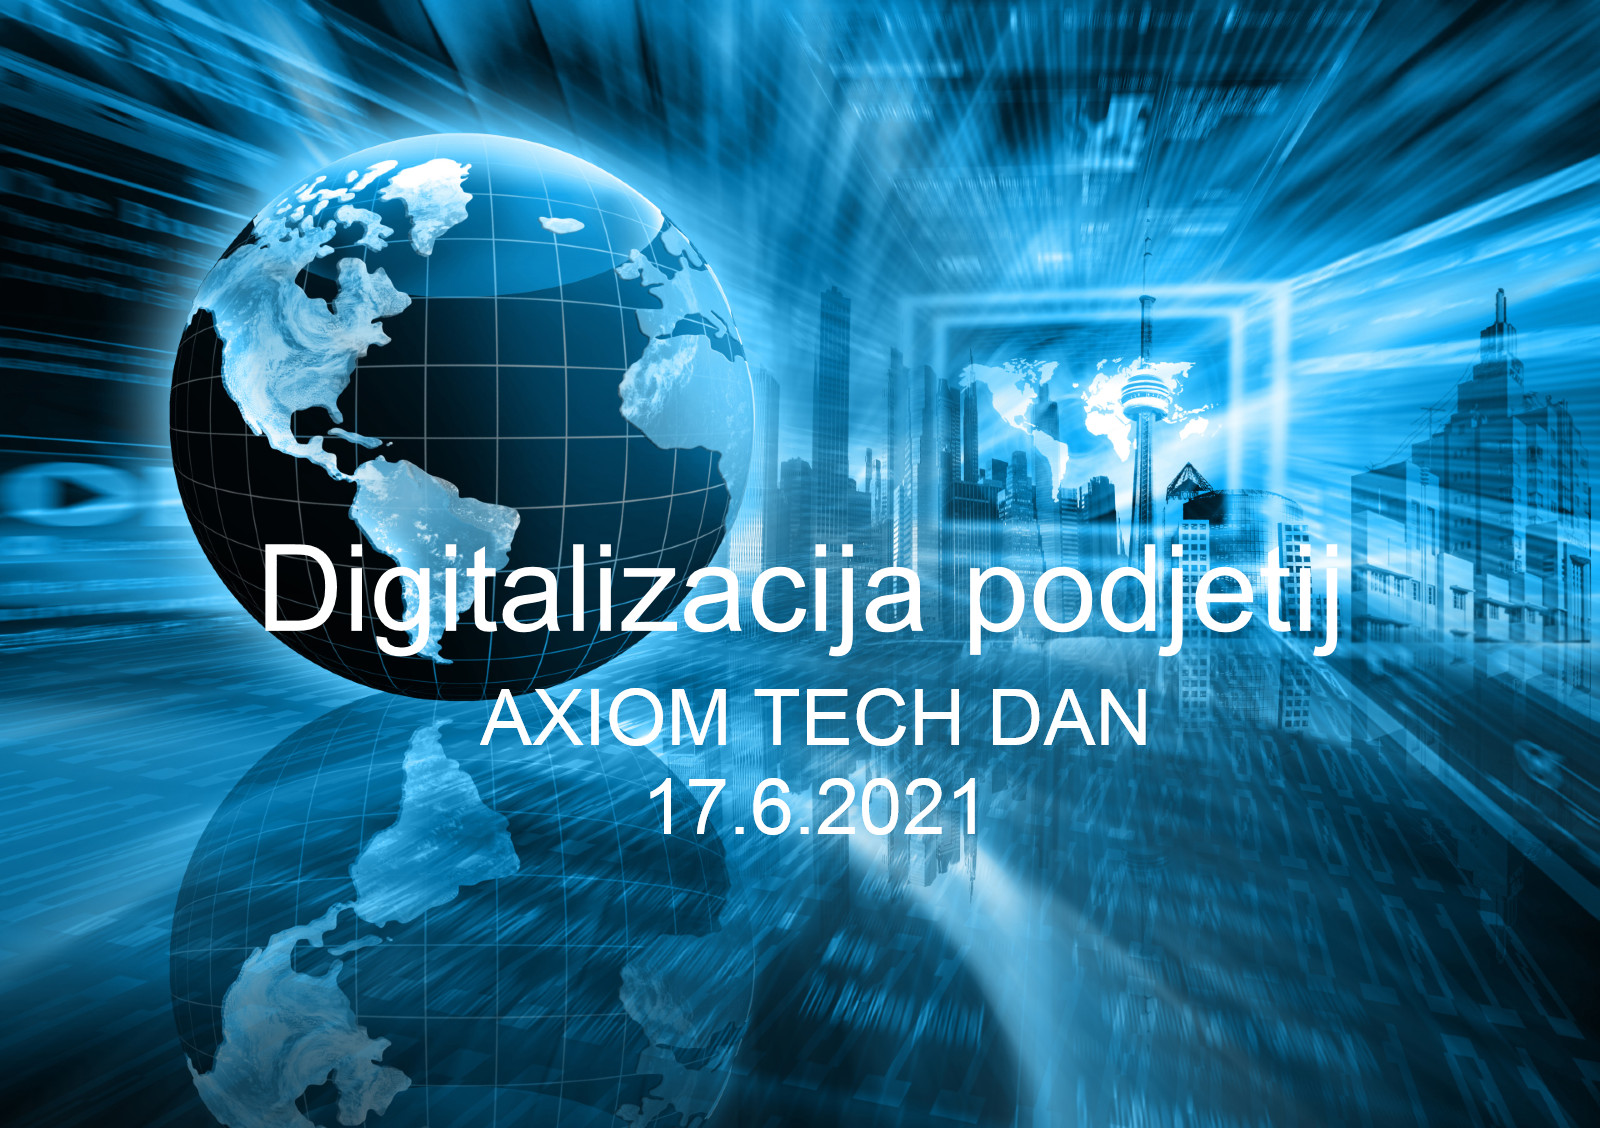 AXIOM TECH DAN 17.6.2021 - 7 webinarjev